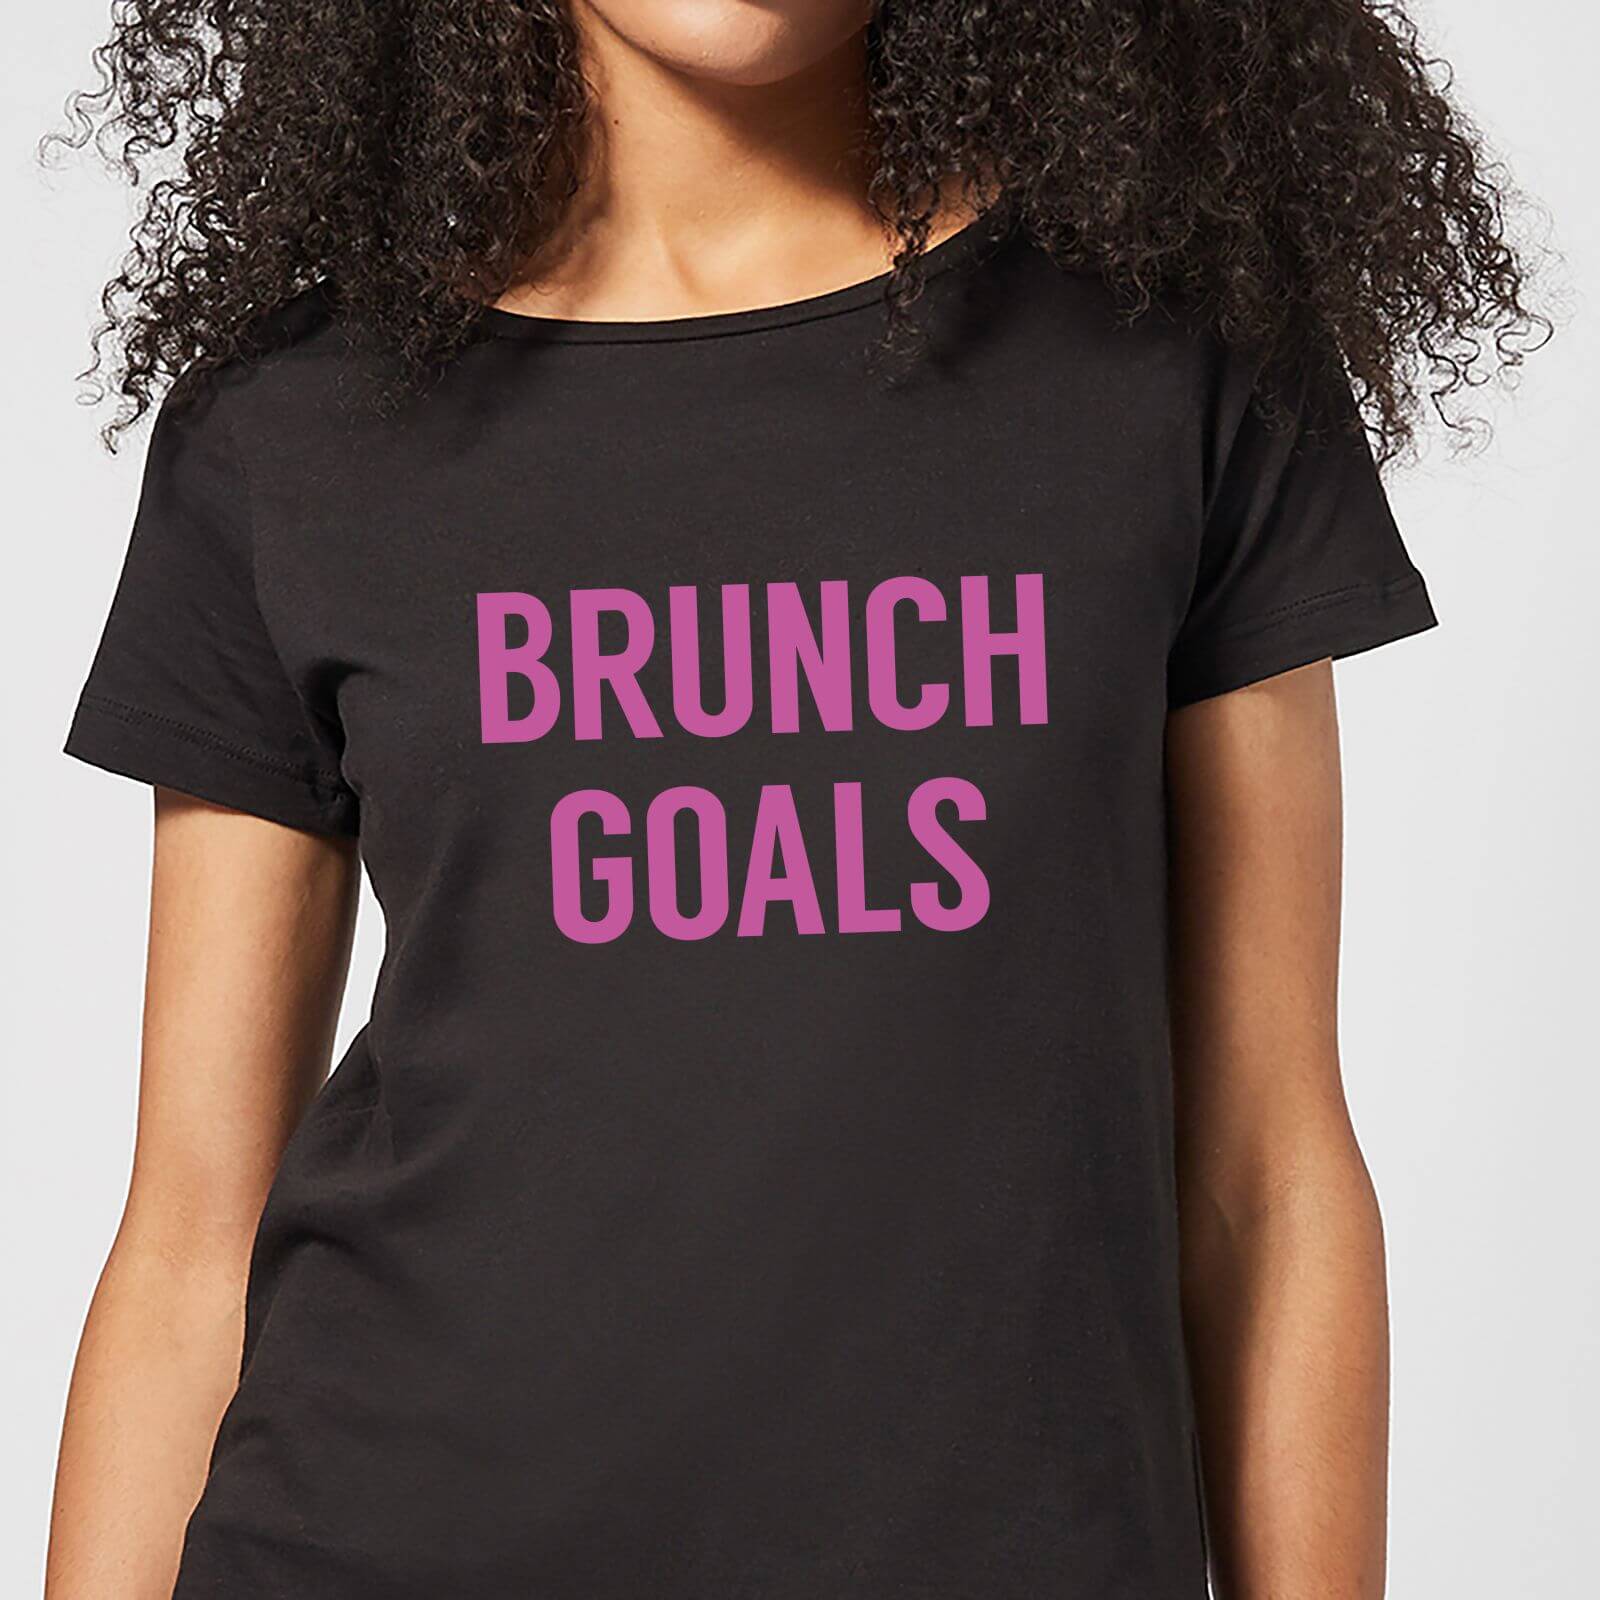 Brunch Goals Women's T-Shirt - Black - 3XL - Black